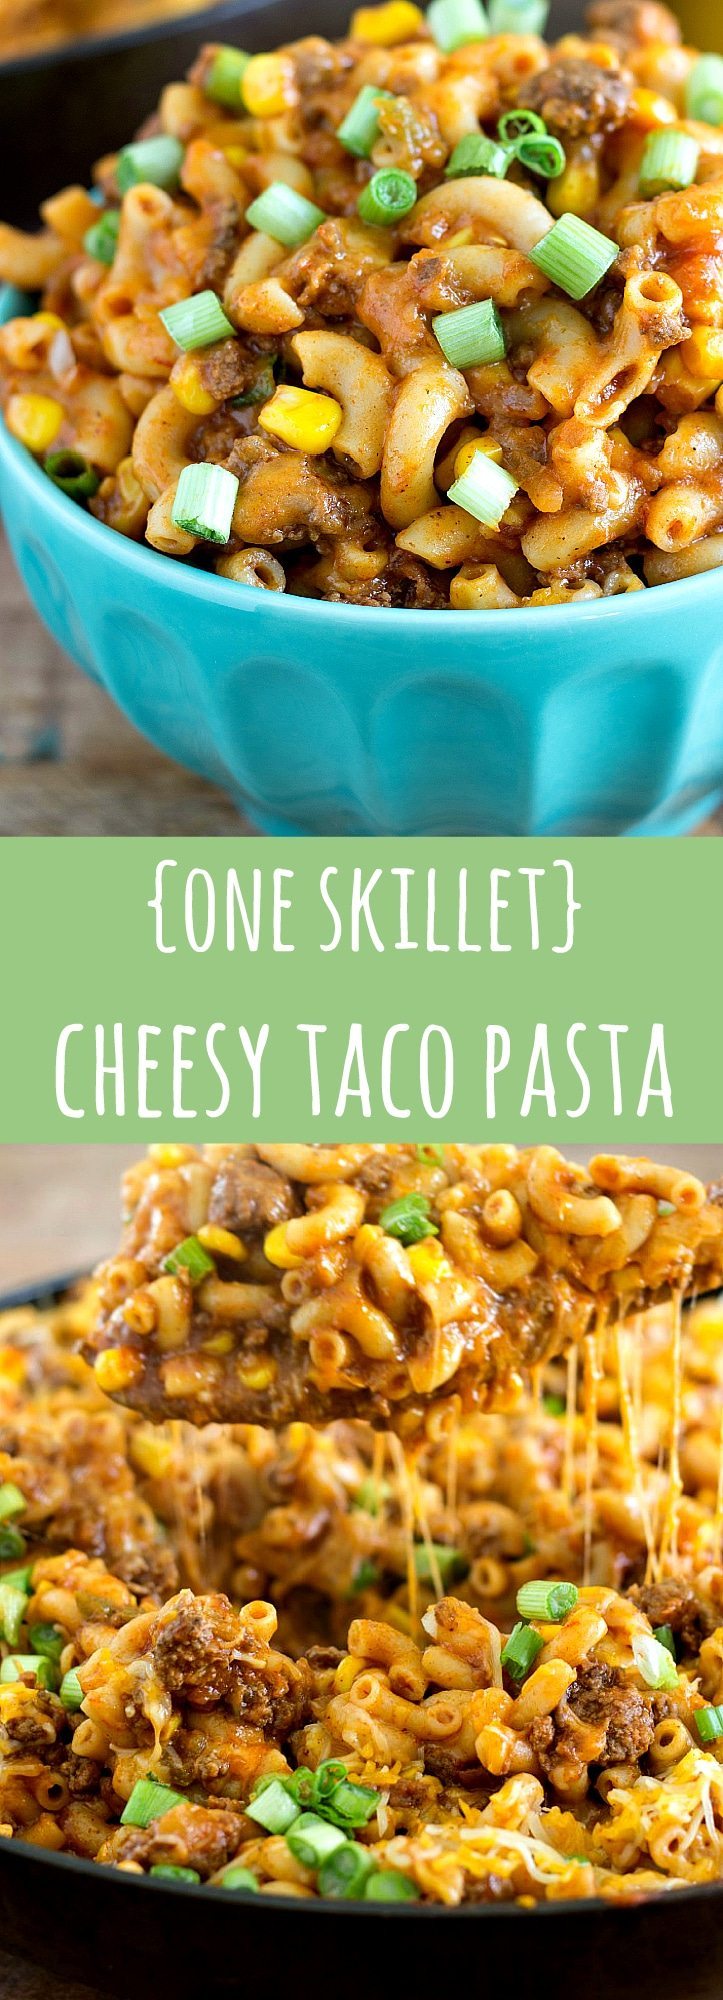 One Skillet Cheesy Taco Pasta